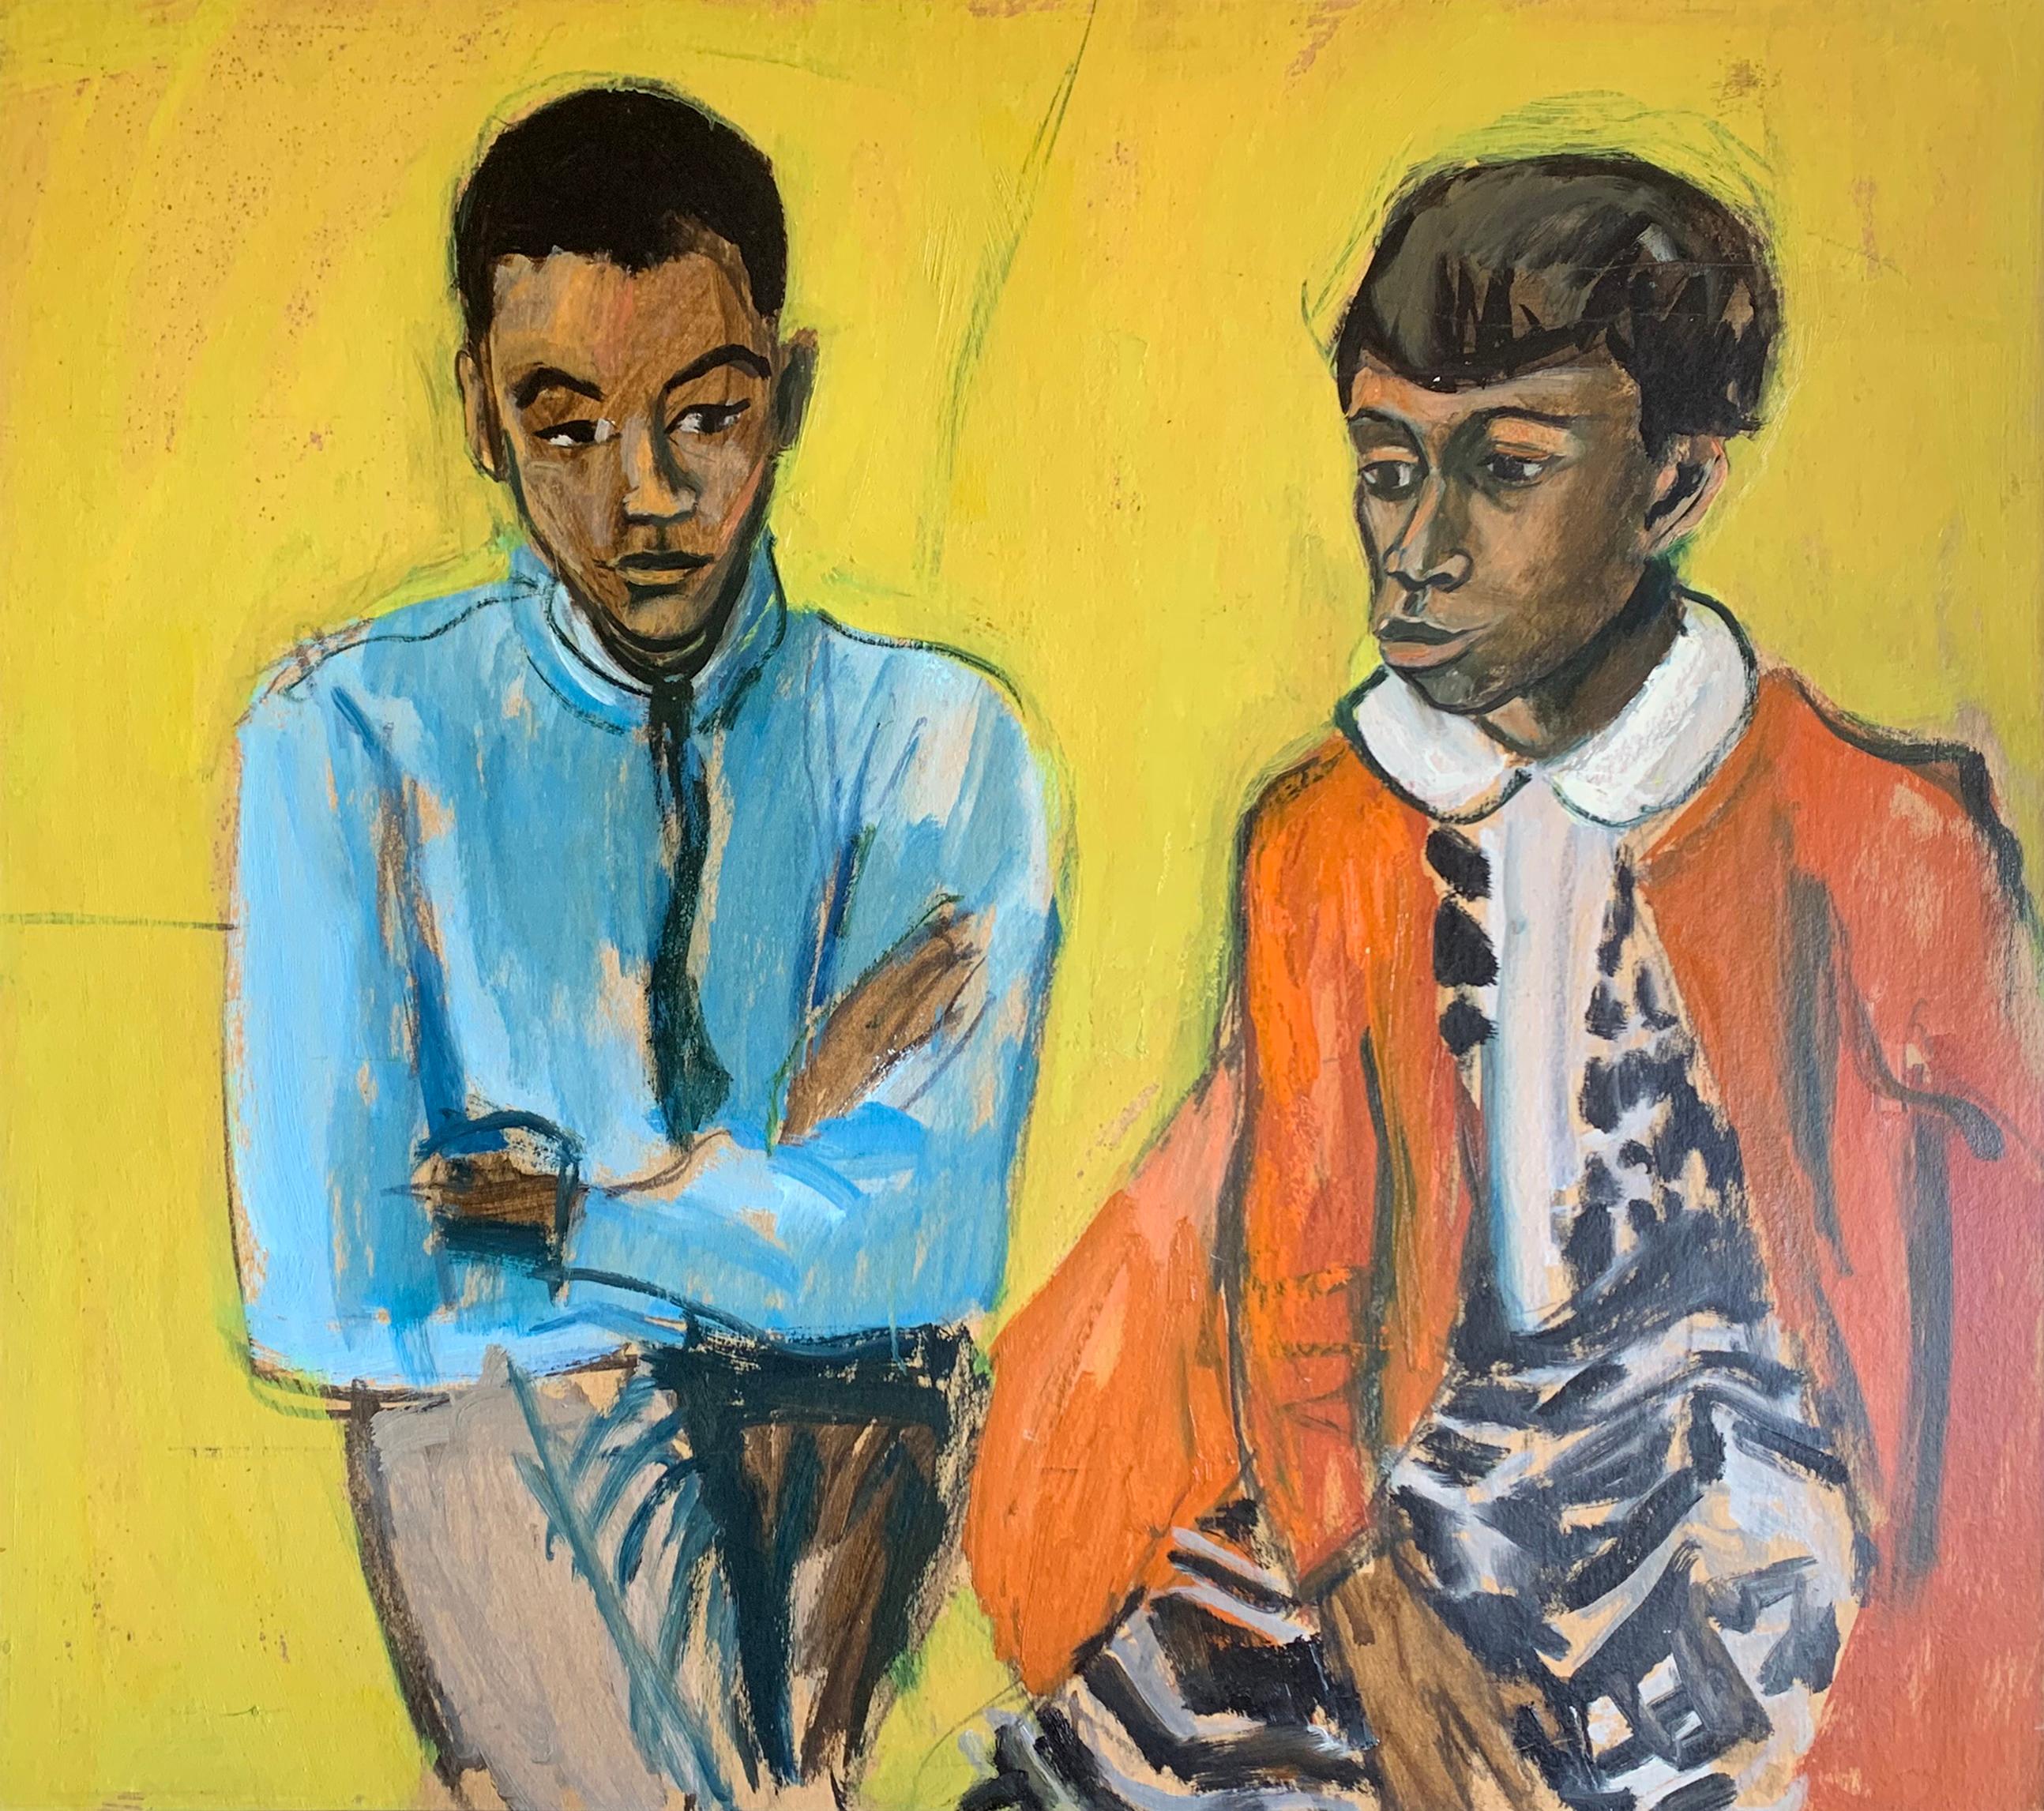 Nicht sprechendes, expressionistisches Porträt von Mutter und Sohn des Künstlers